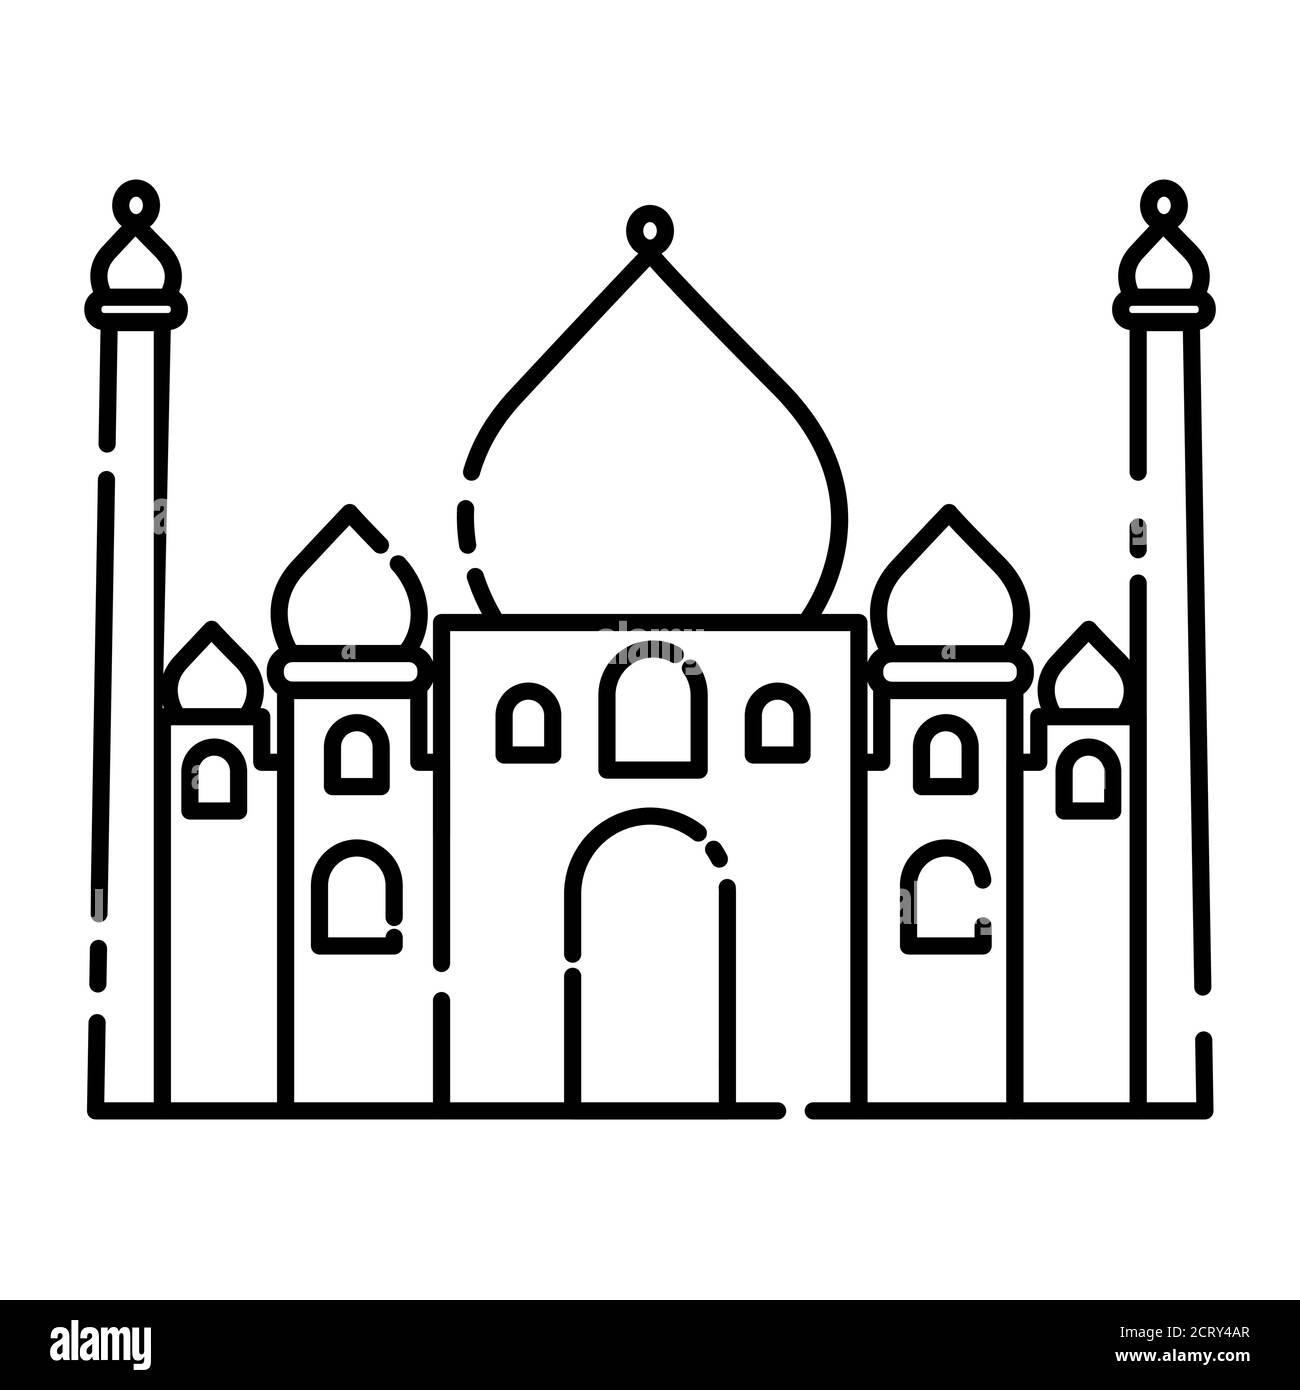 Khawja shamna mira dargah miraj. | City, Taj mahal, Landmarks